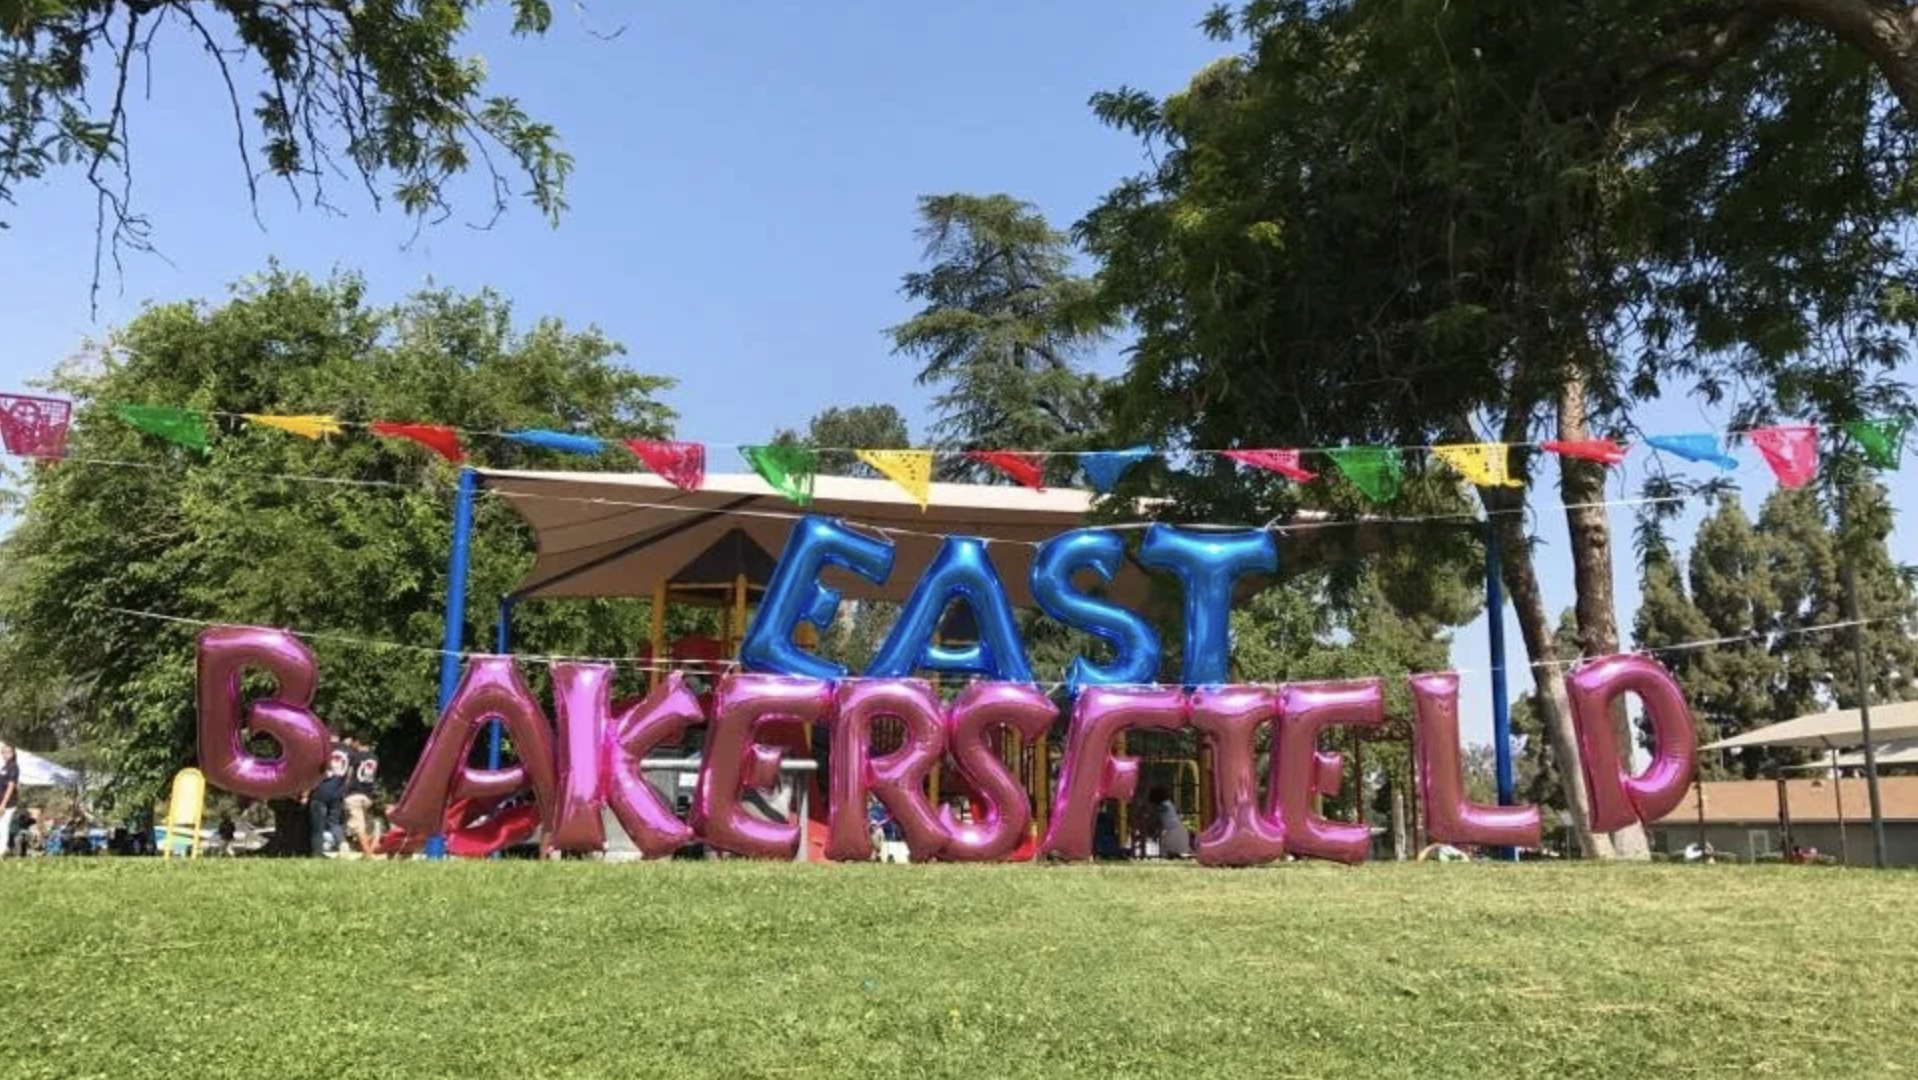 East Bakersfield Festival